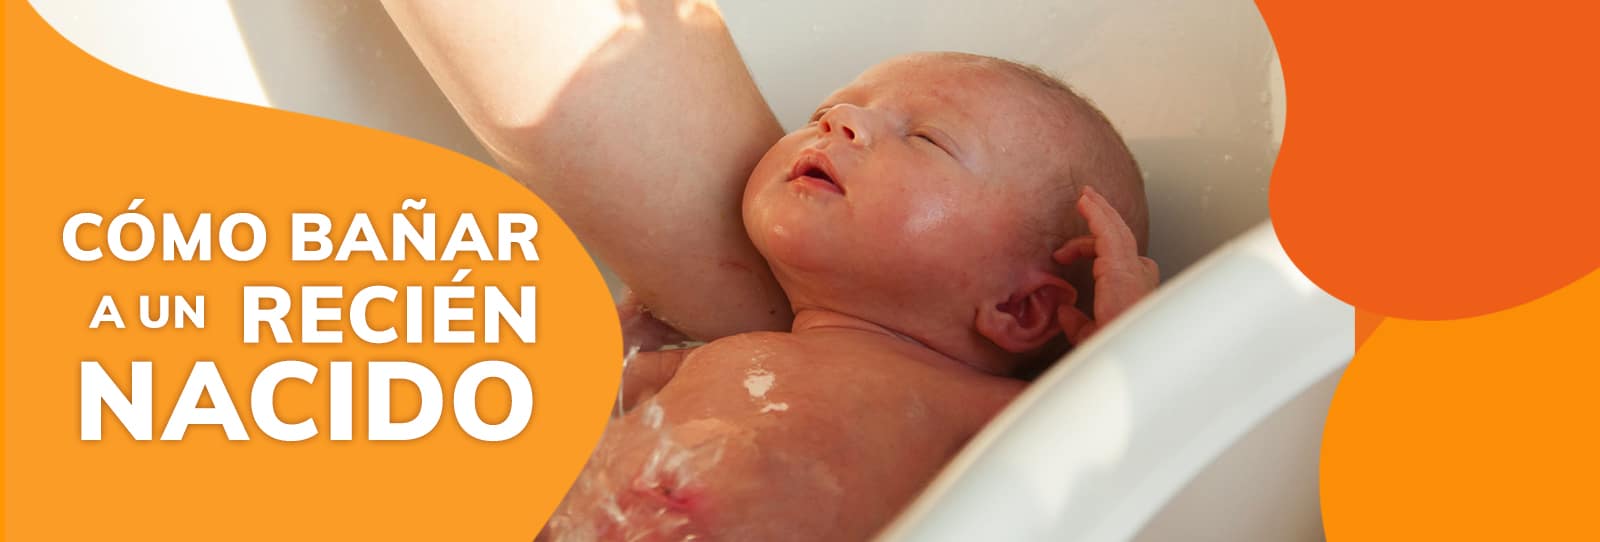 Cómo bañar a tu recién nacido con una esponja? - Ovia Health